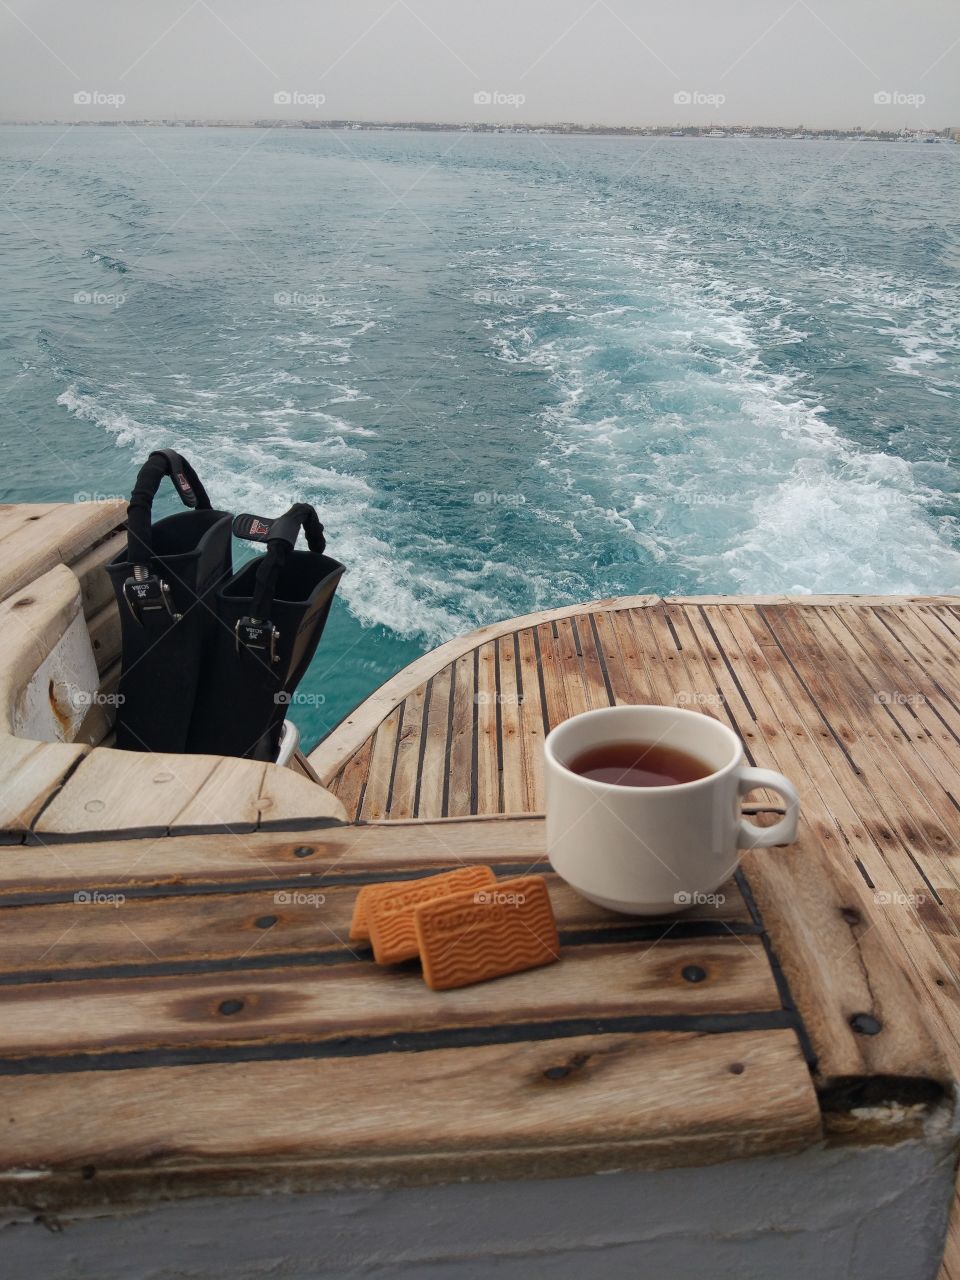 morning at sea